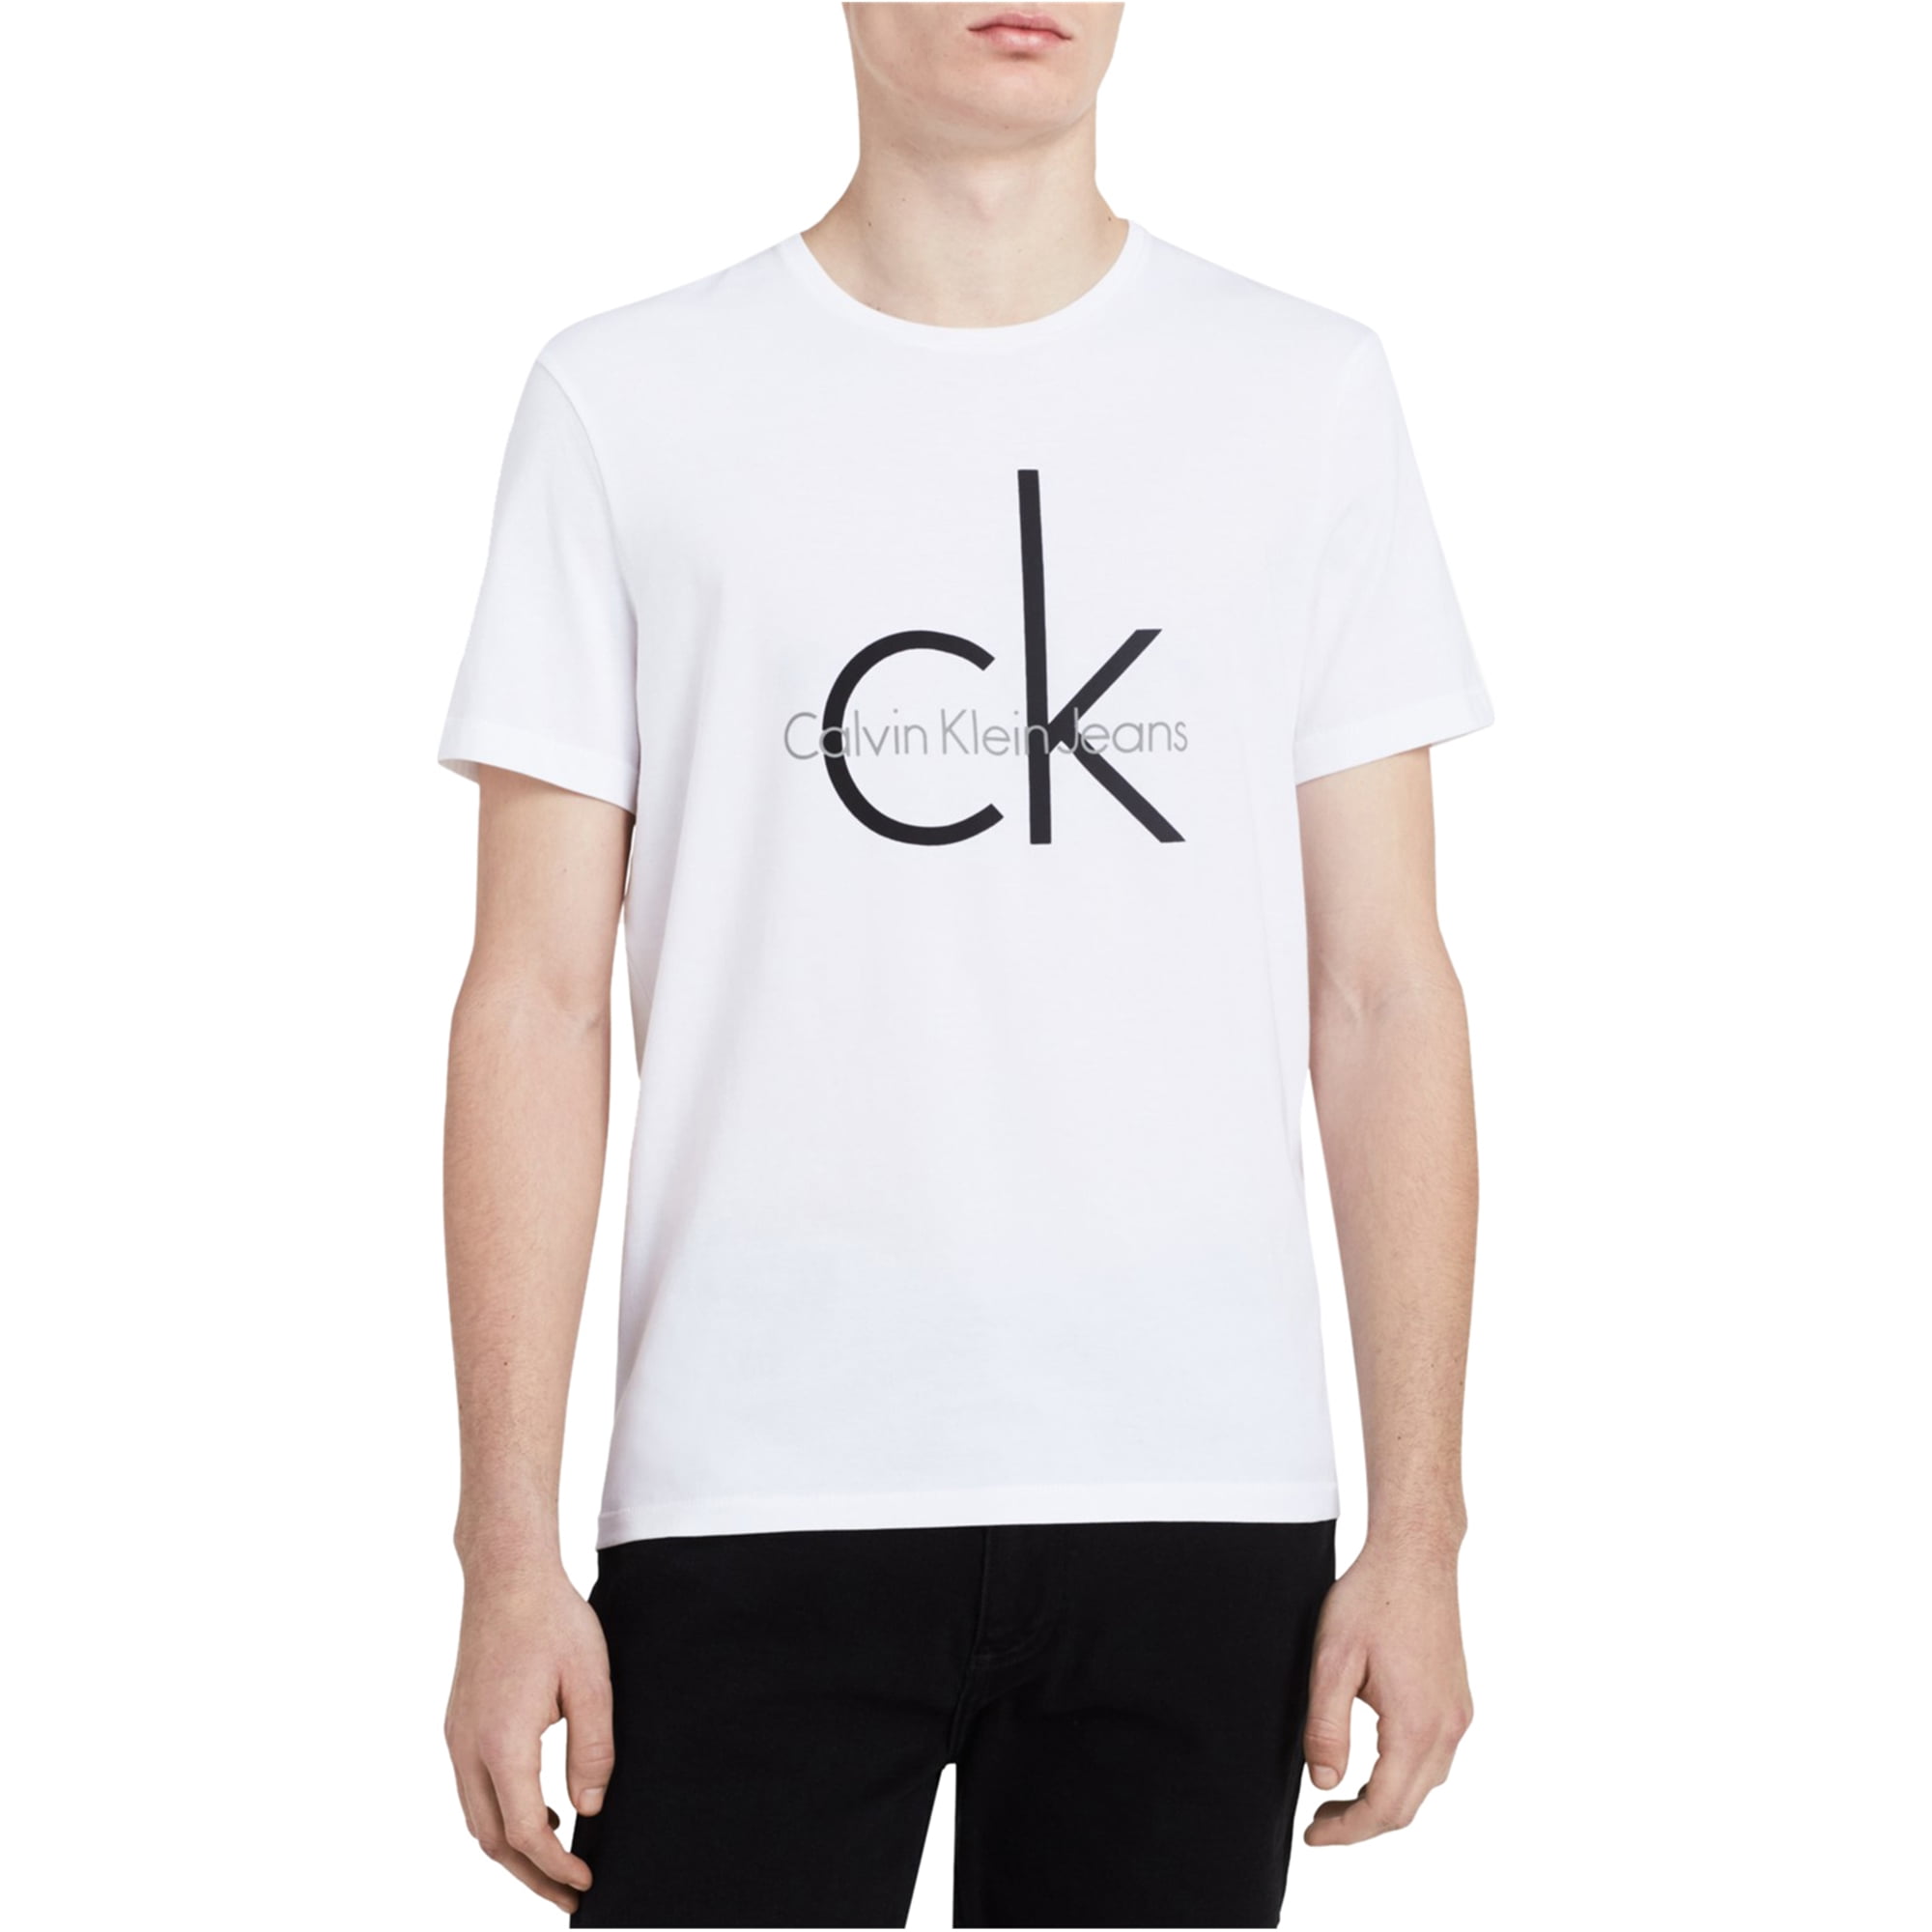 Calvin Klein - Calvin Klein Mens Classic CK Logo Graphic T-Shirt, White